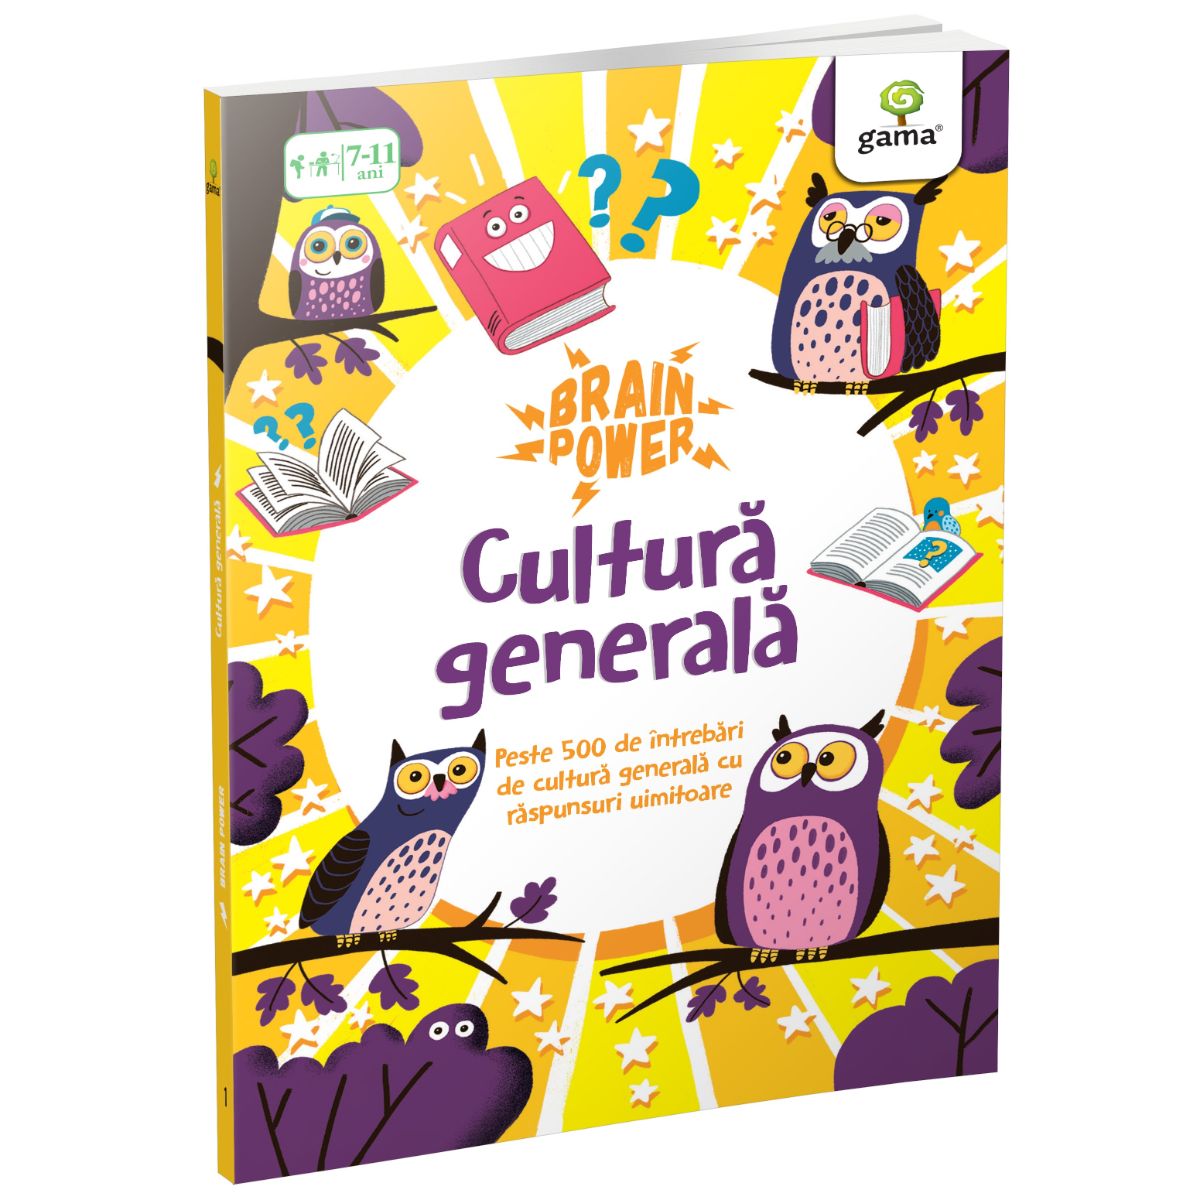 Cultura generala, Brain Power Carti pentru copii imagine 2022